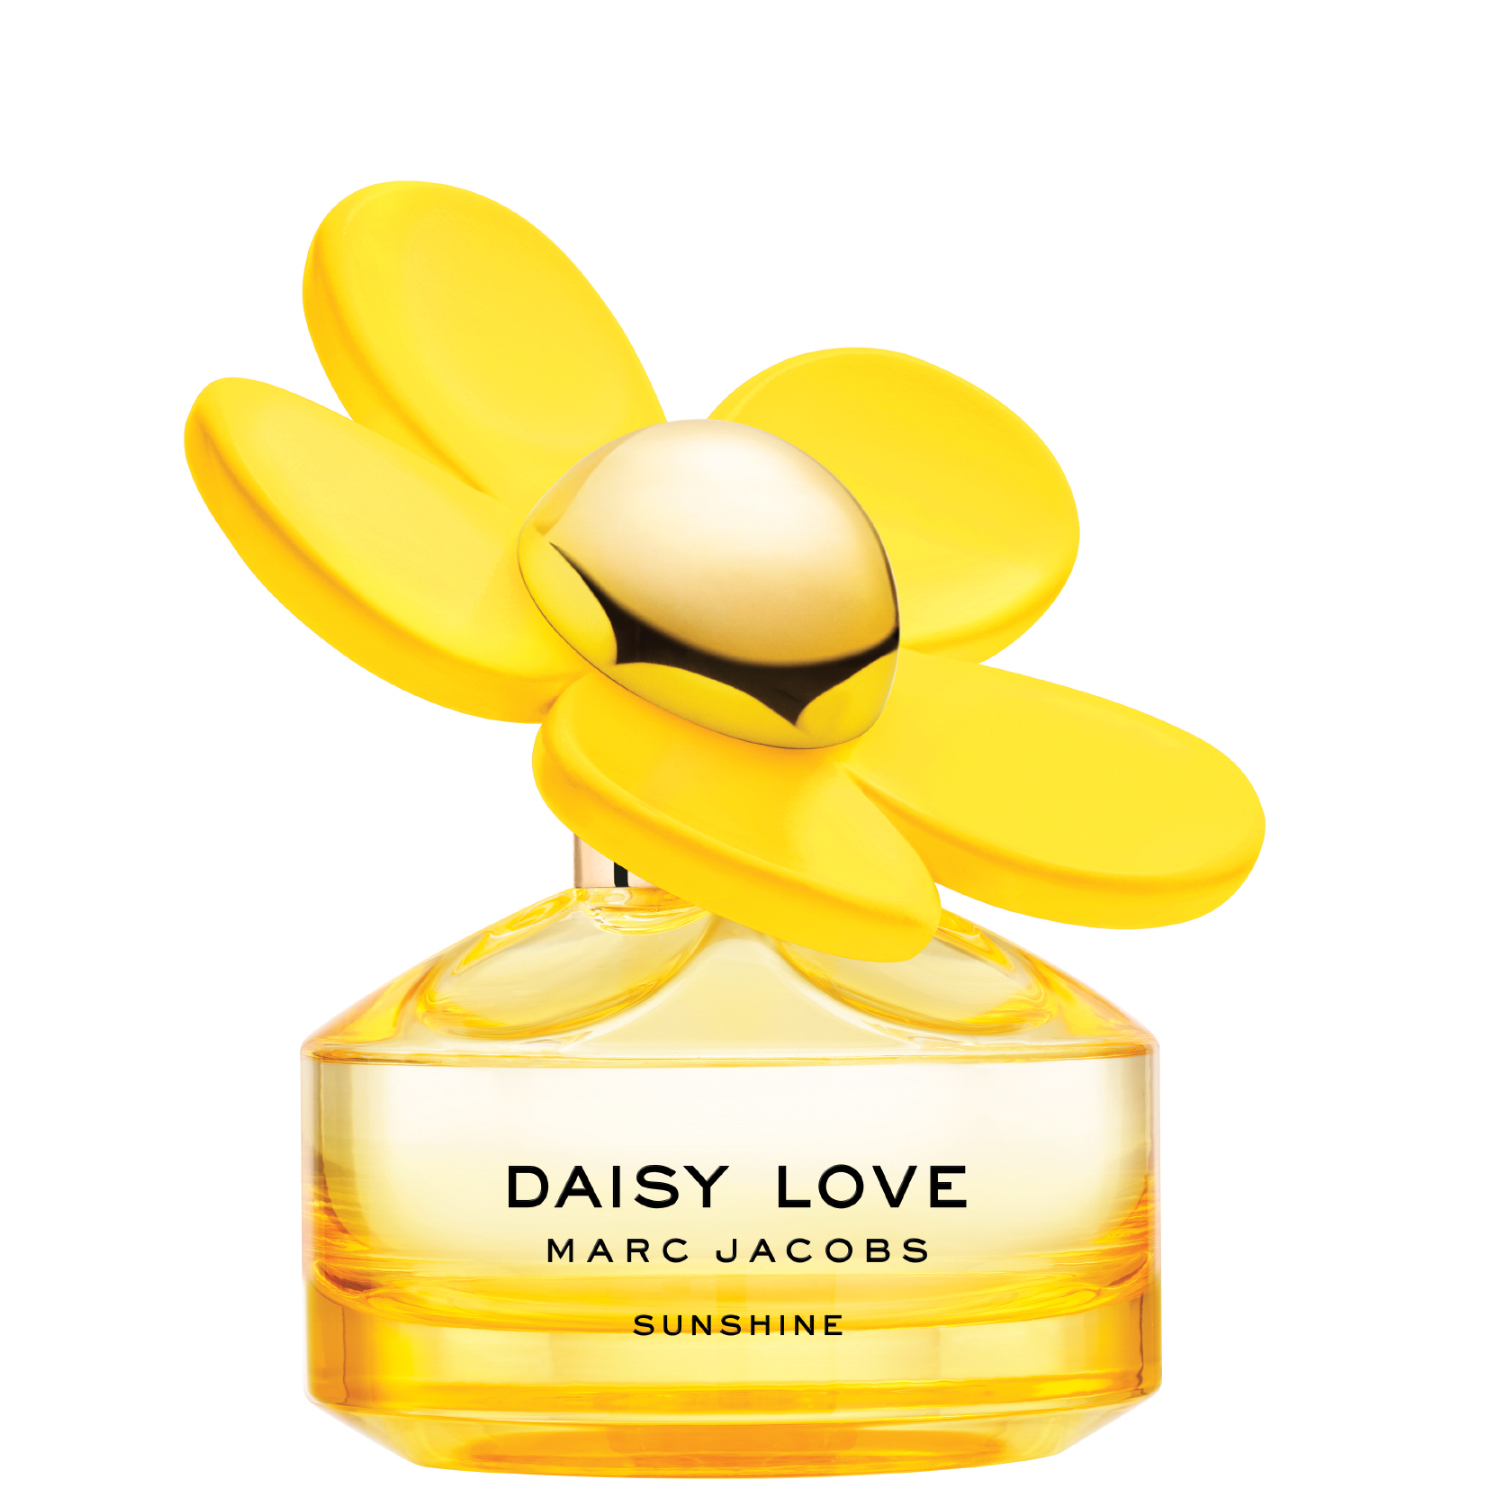 Marc Jacobs Daisy Love Sunshine Eau de Toilette 50ml